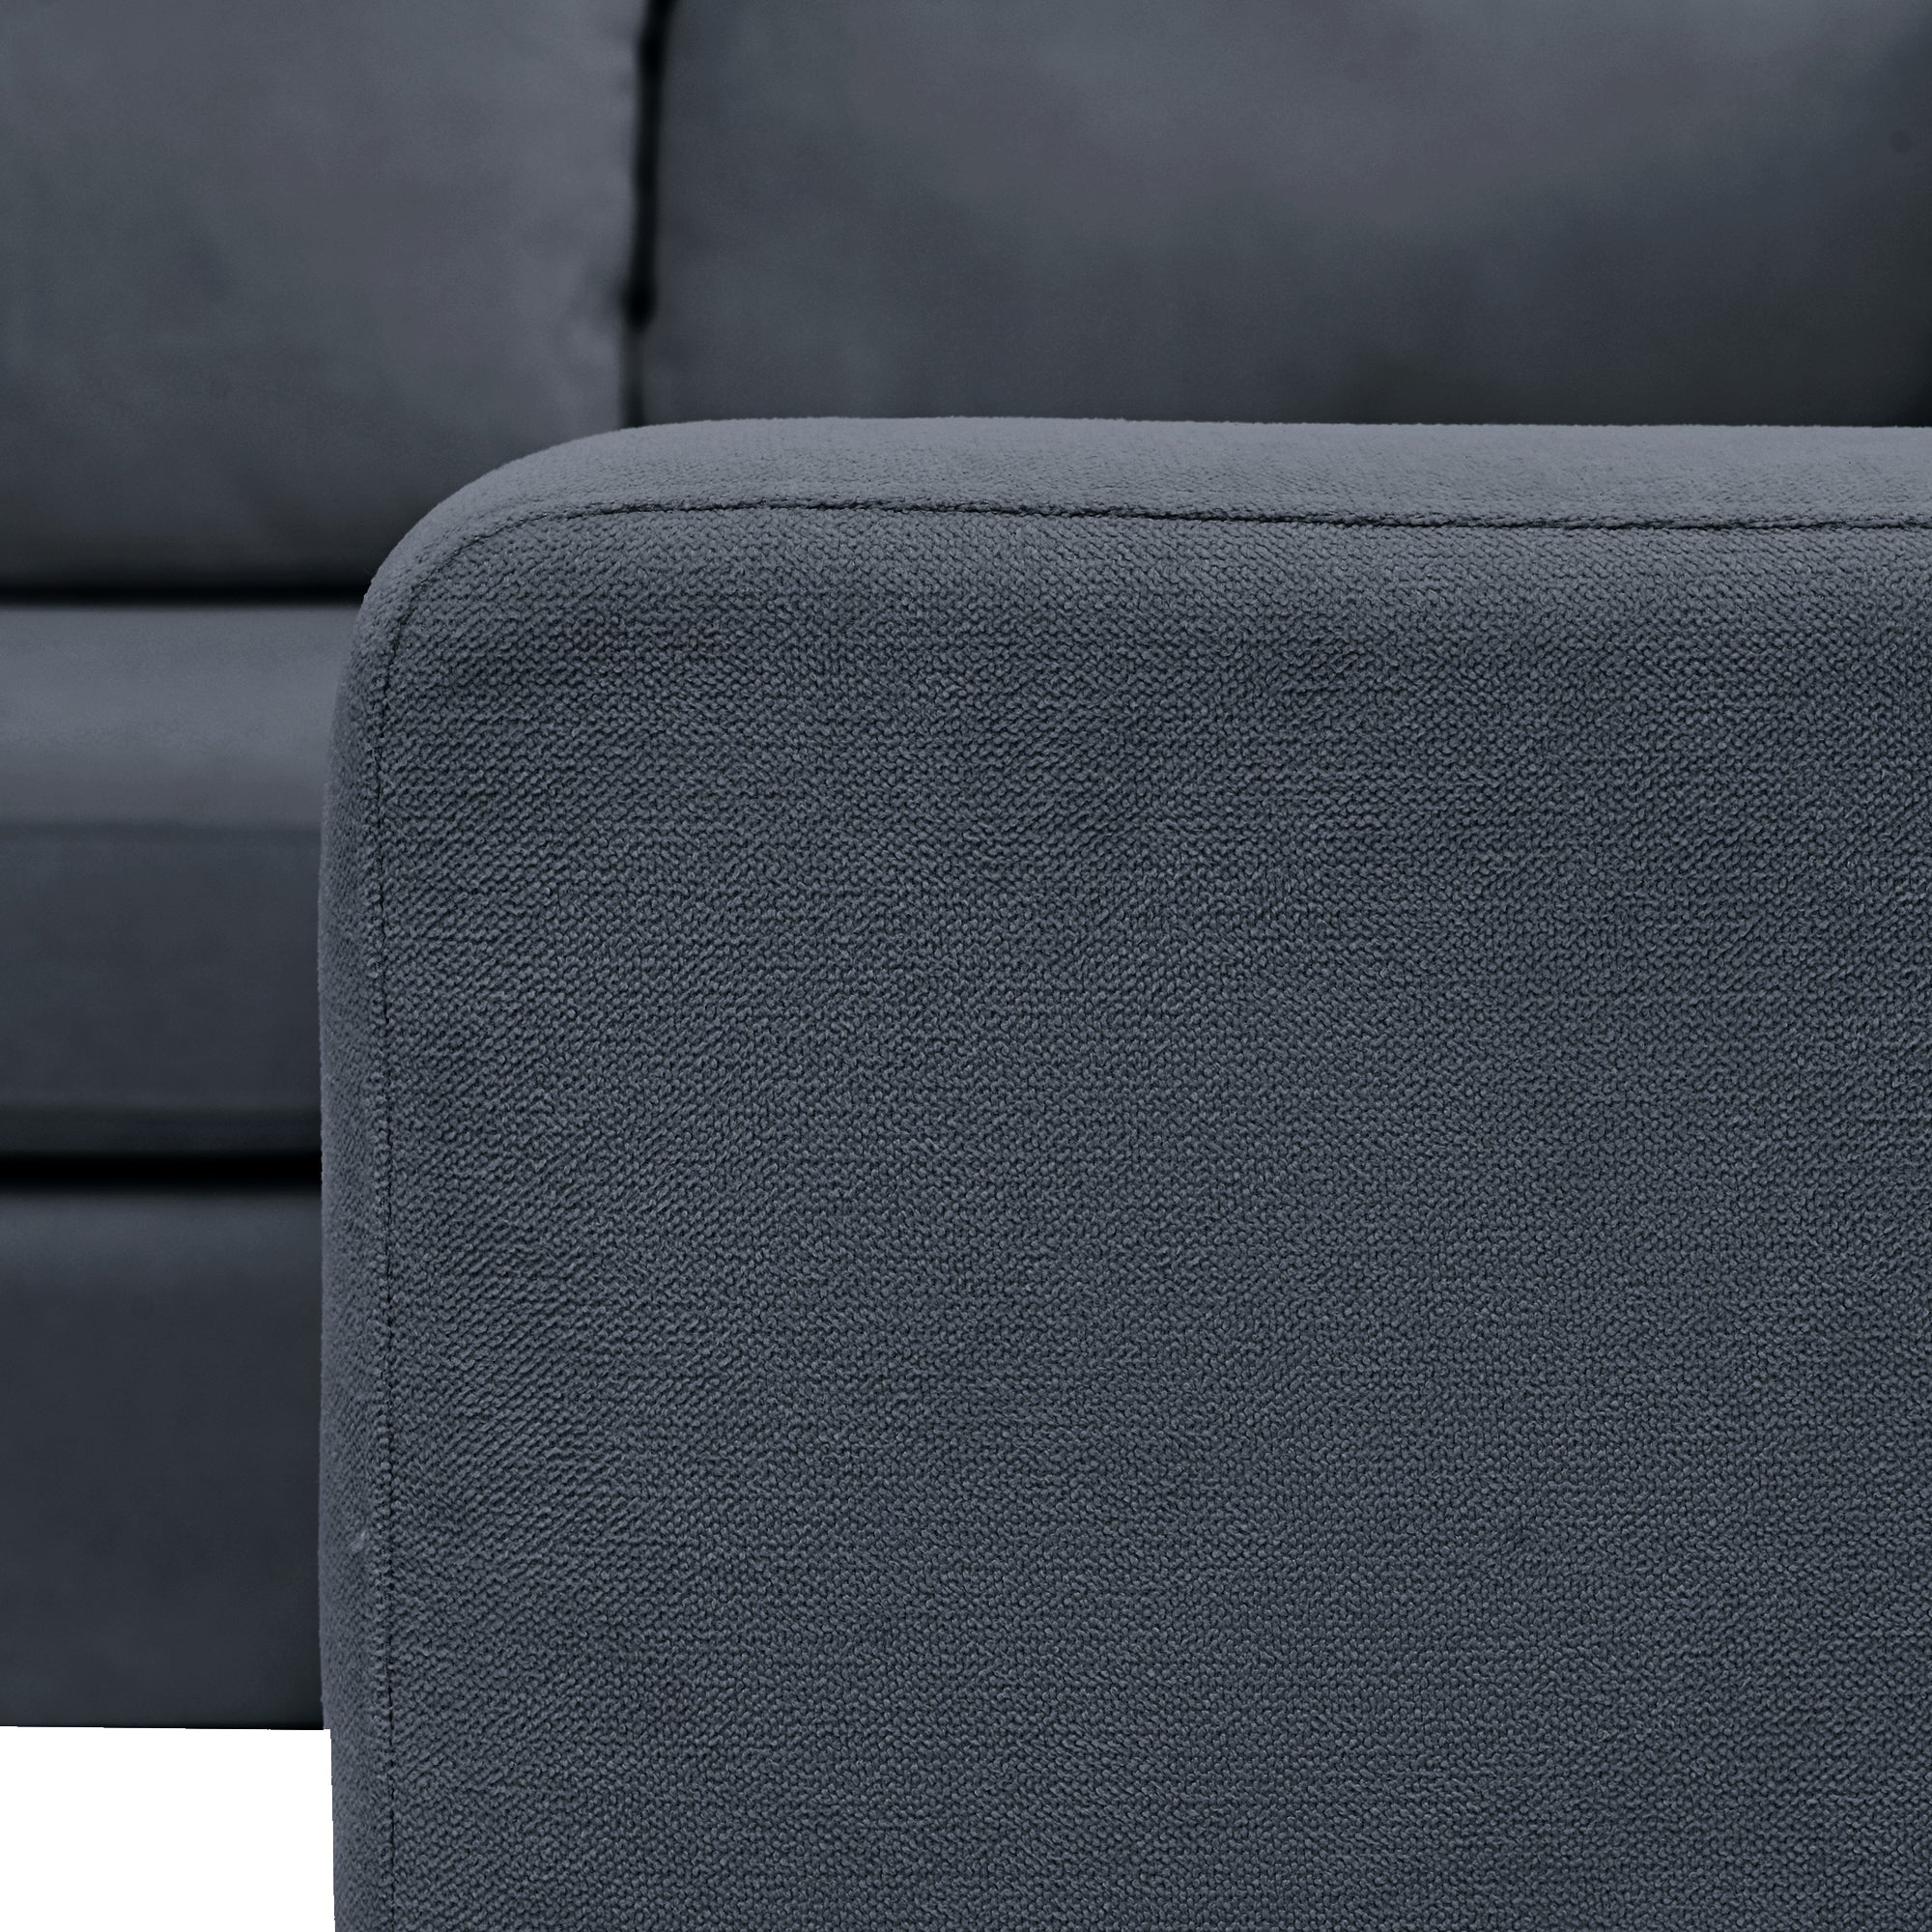 U-Shaped Large Grey Sectional Sofa